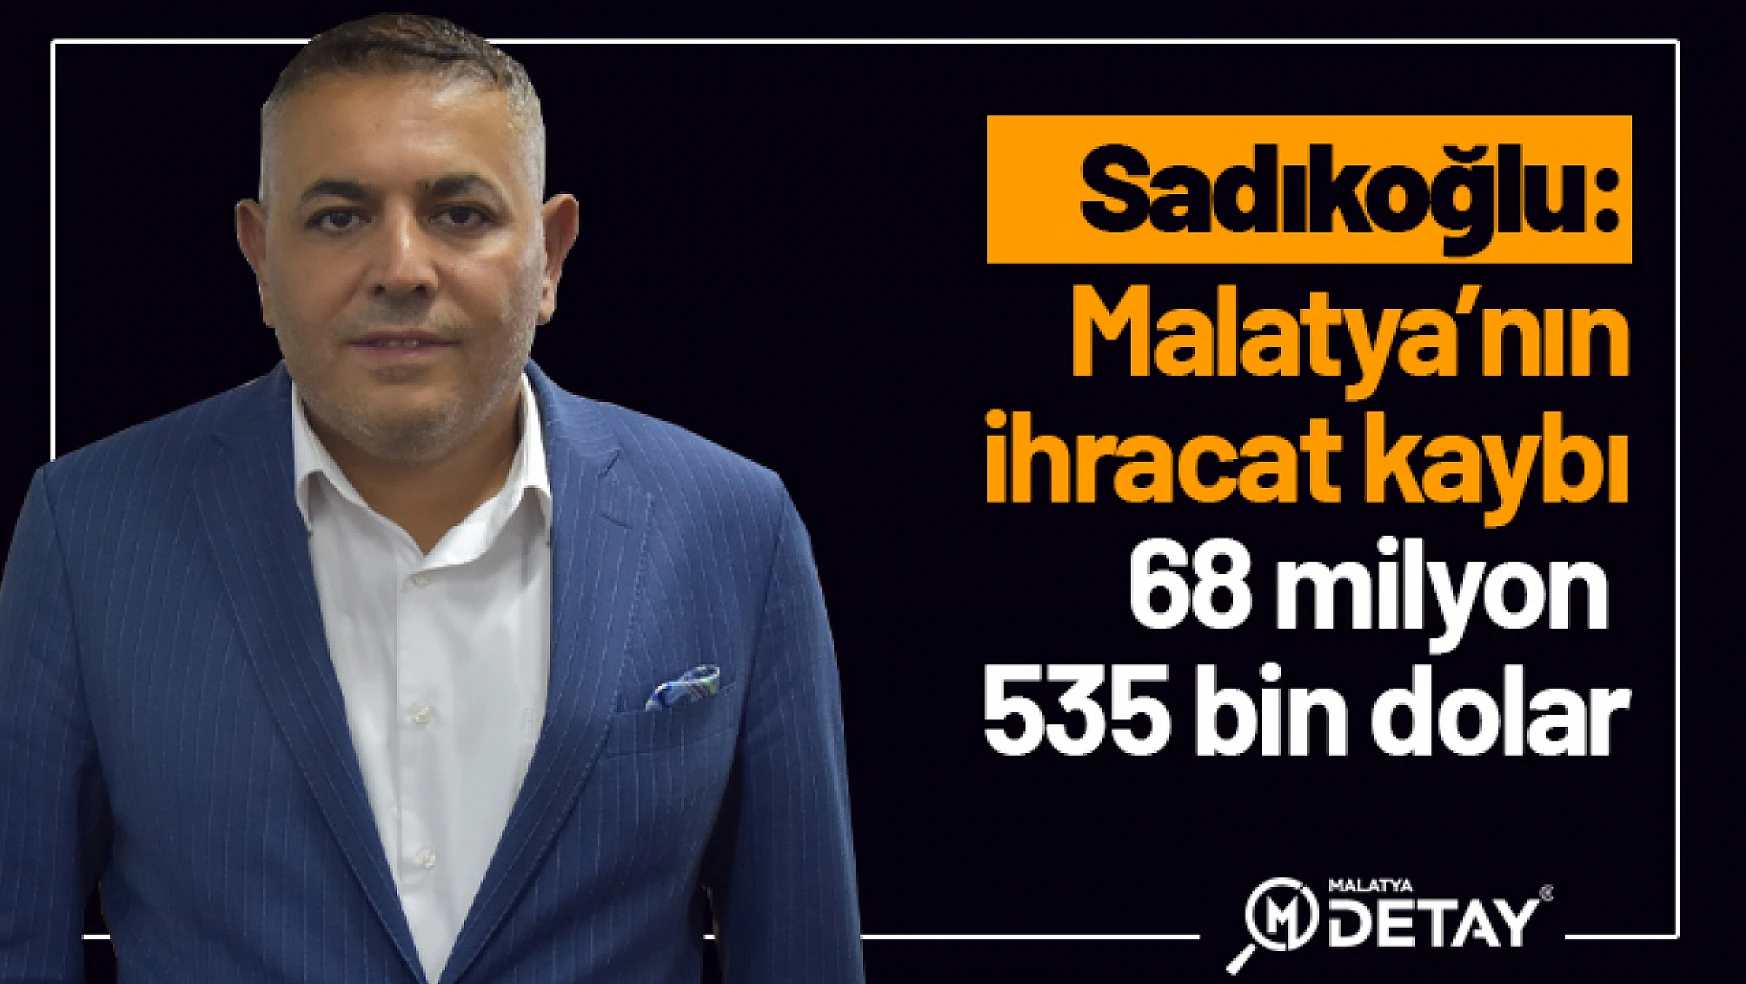 Sadıkoğlu: Malatya'nın ihracat kaybı 68 milyon 535 bin dolar